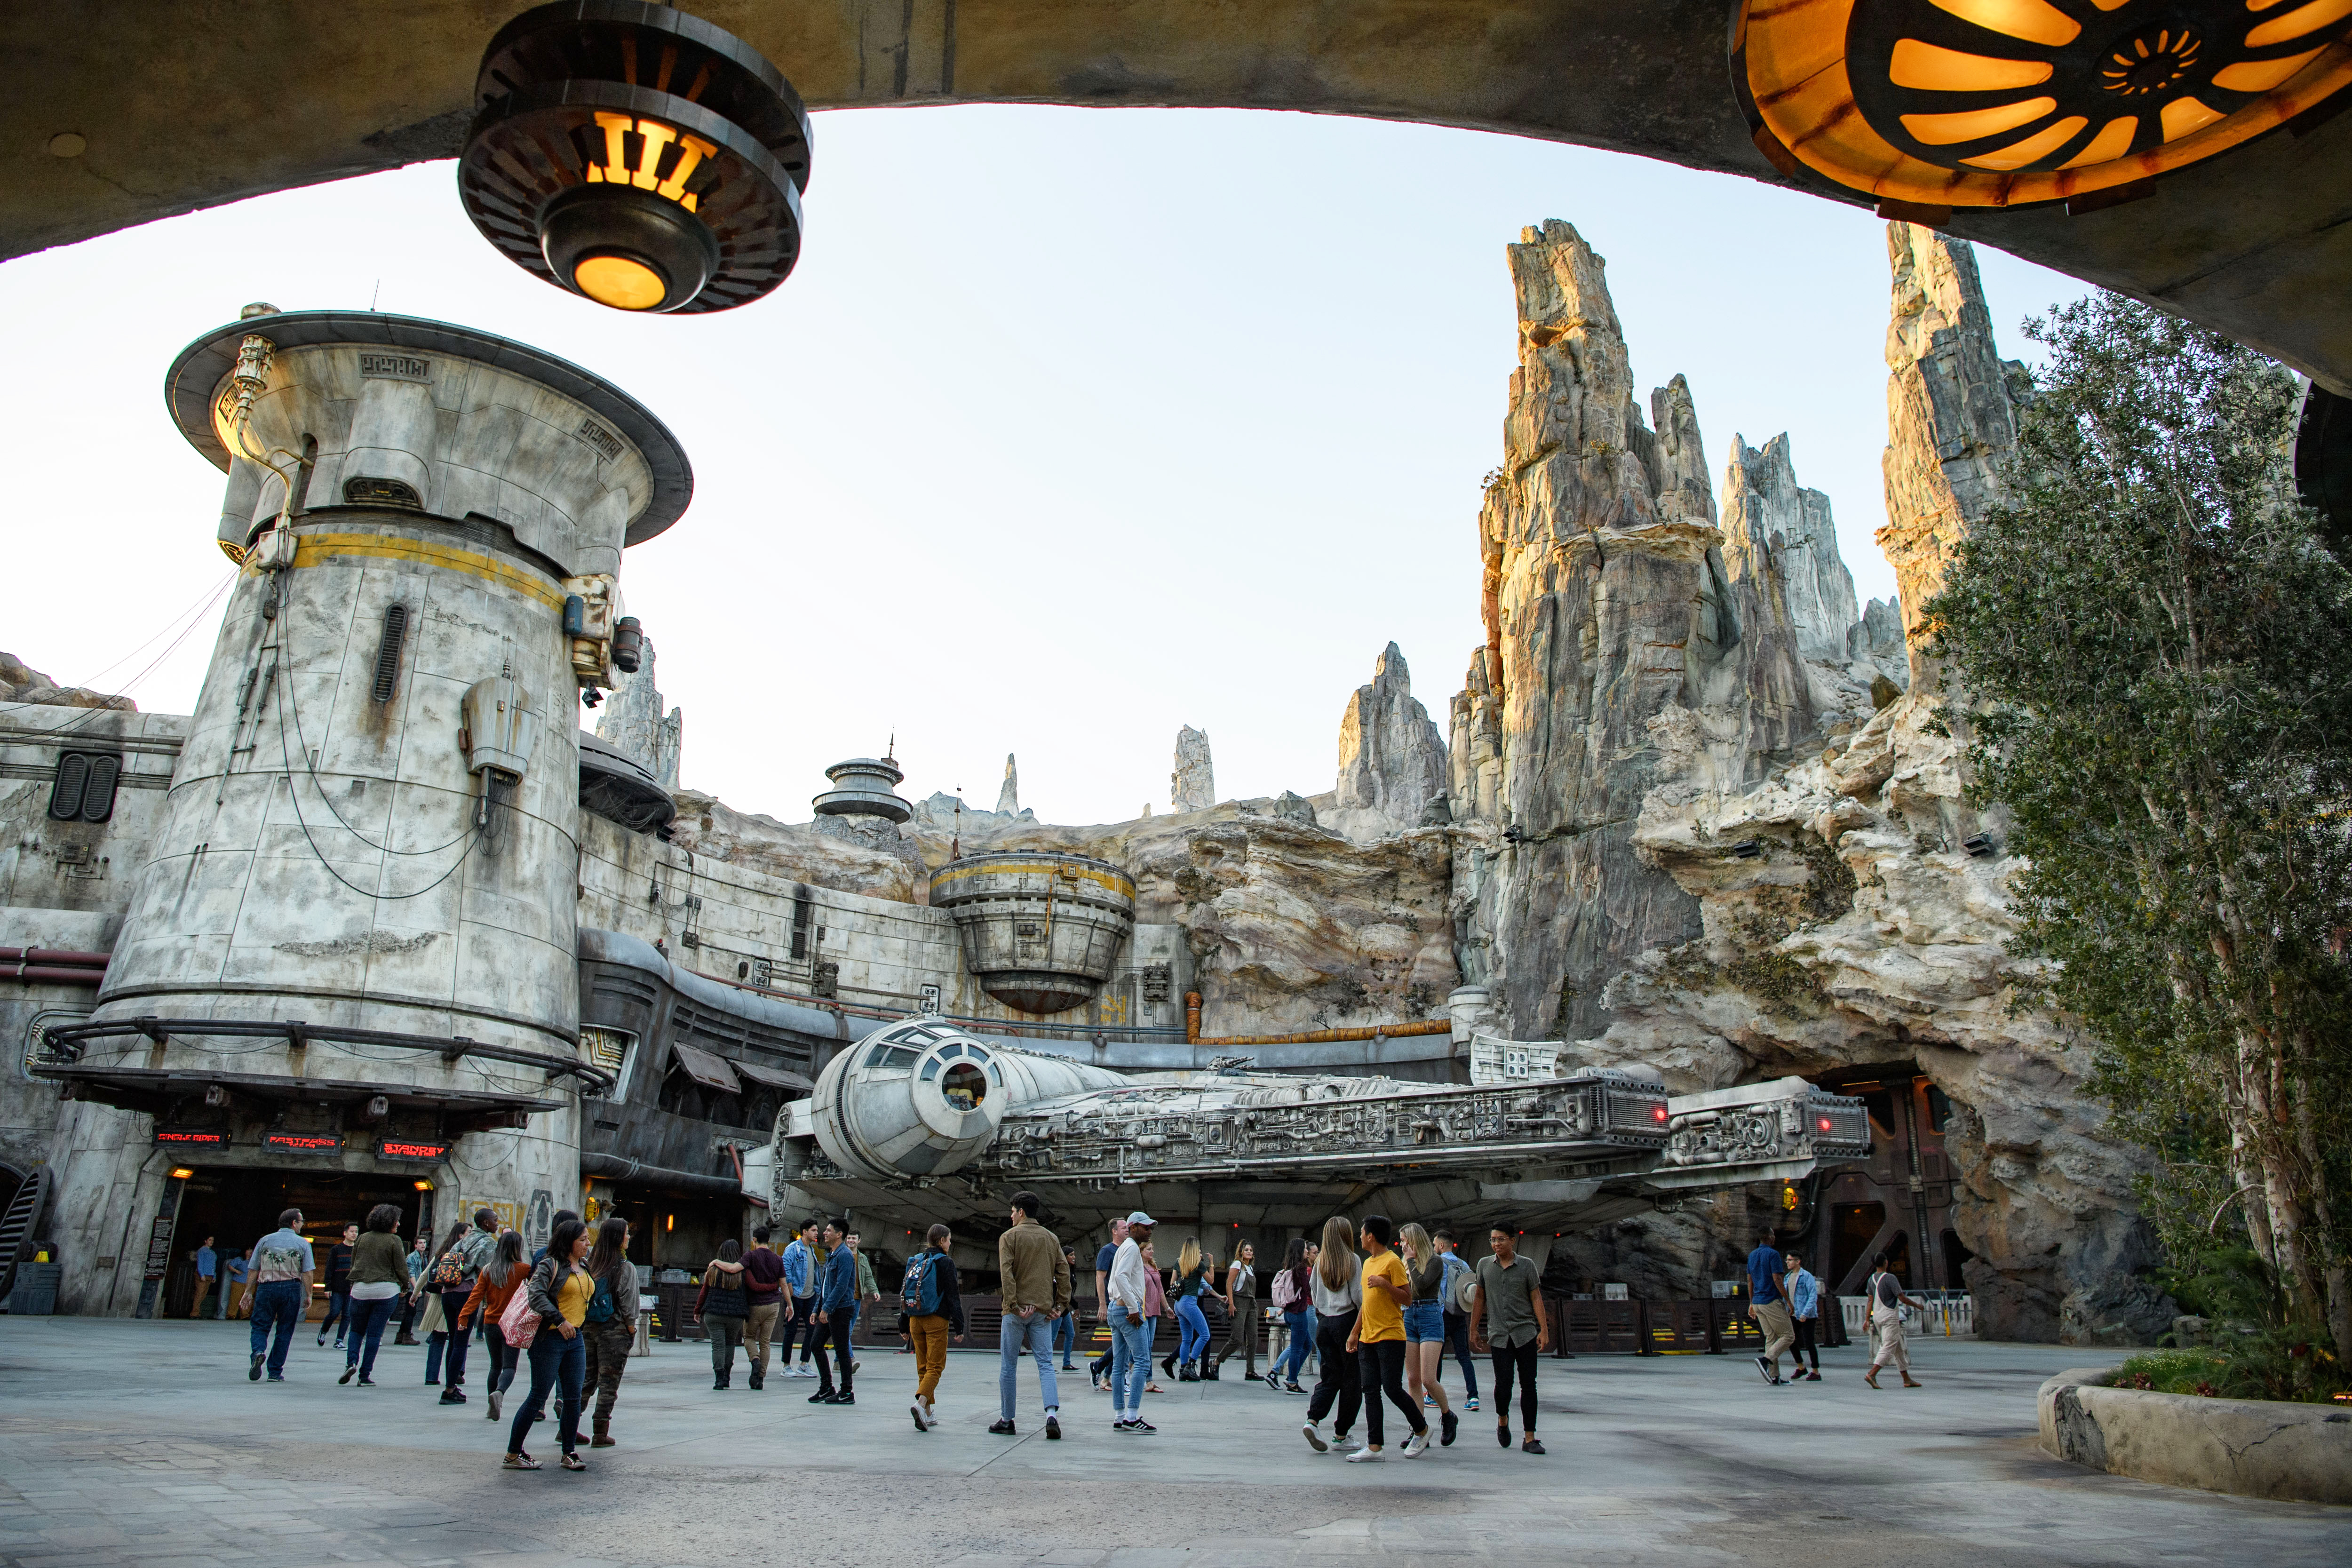 Varios visitantes en la zona donde está instalado el Halcón Milenario de “Star Wars”. (Foto Prensa Libre: Disney/Lucasfilm)